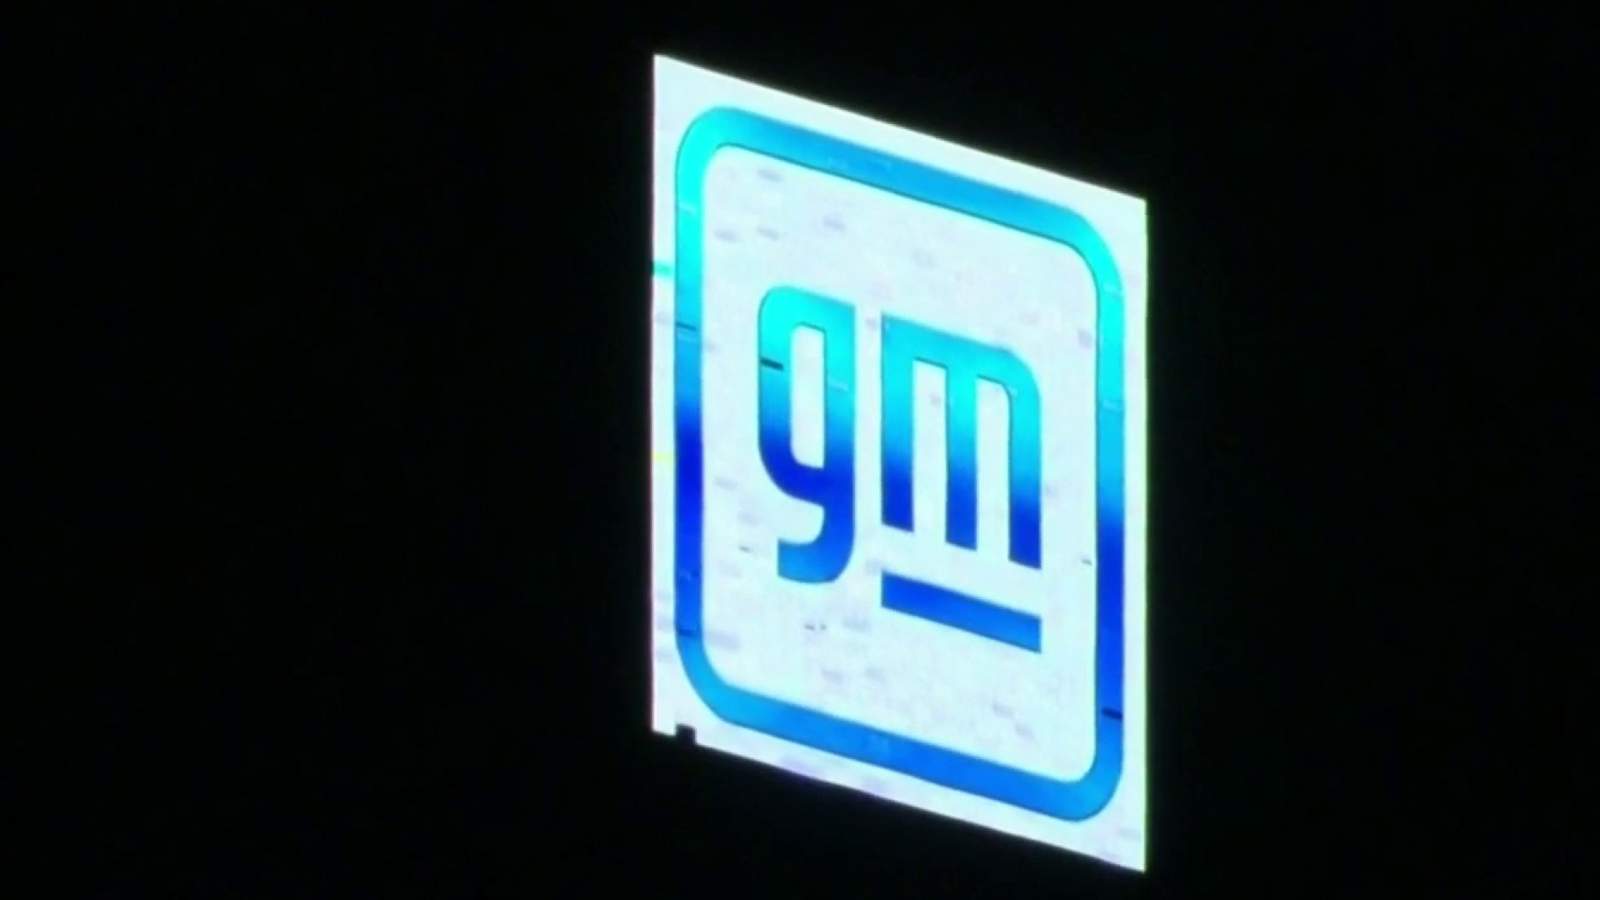 New GM logo debuts atop Ren Cen in Detroit